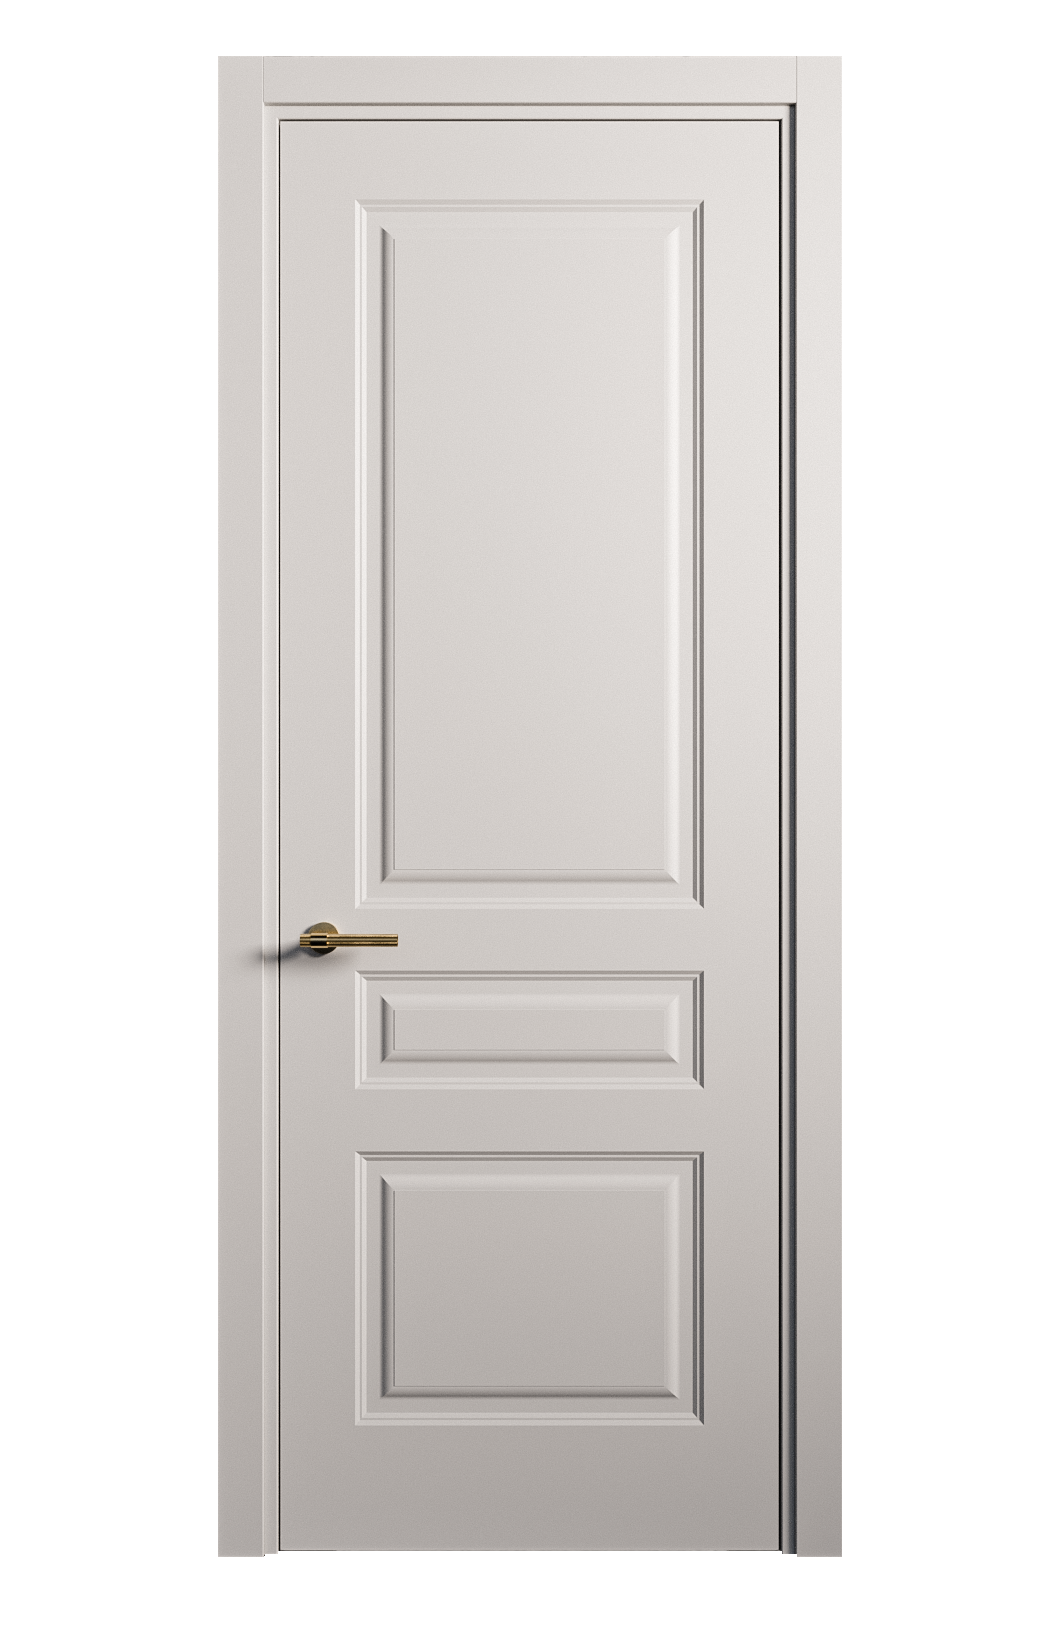 Межкомнатная дверь Вита-2 глухая эмаль ral 7047 26398